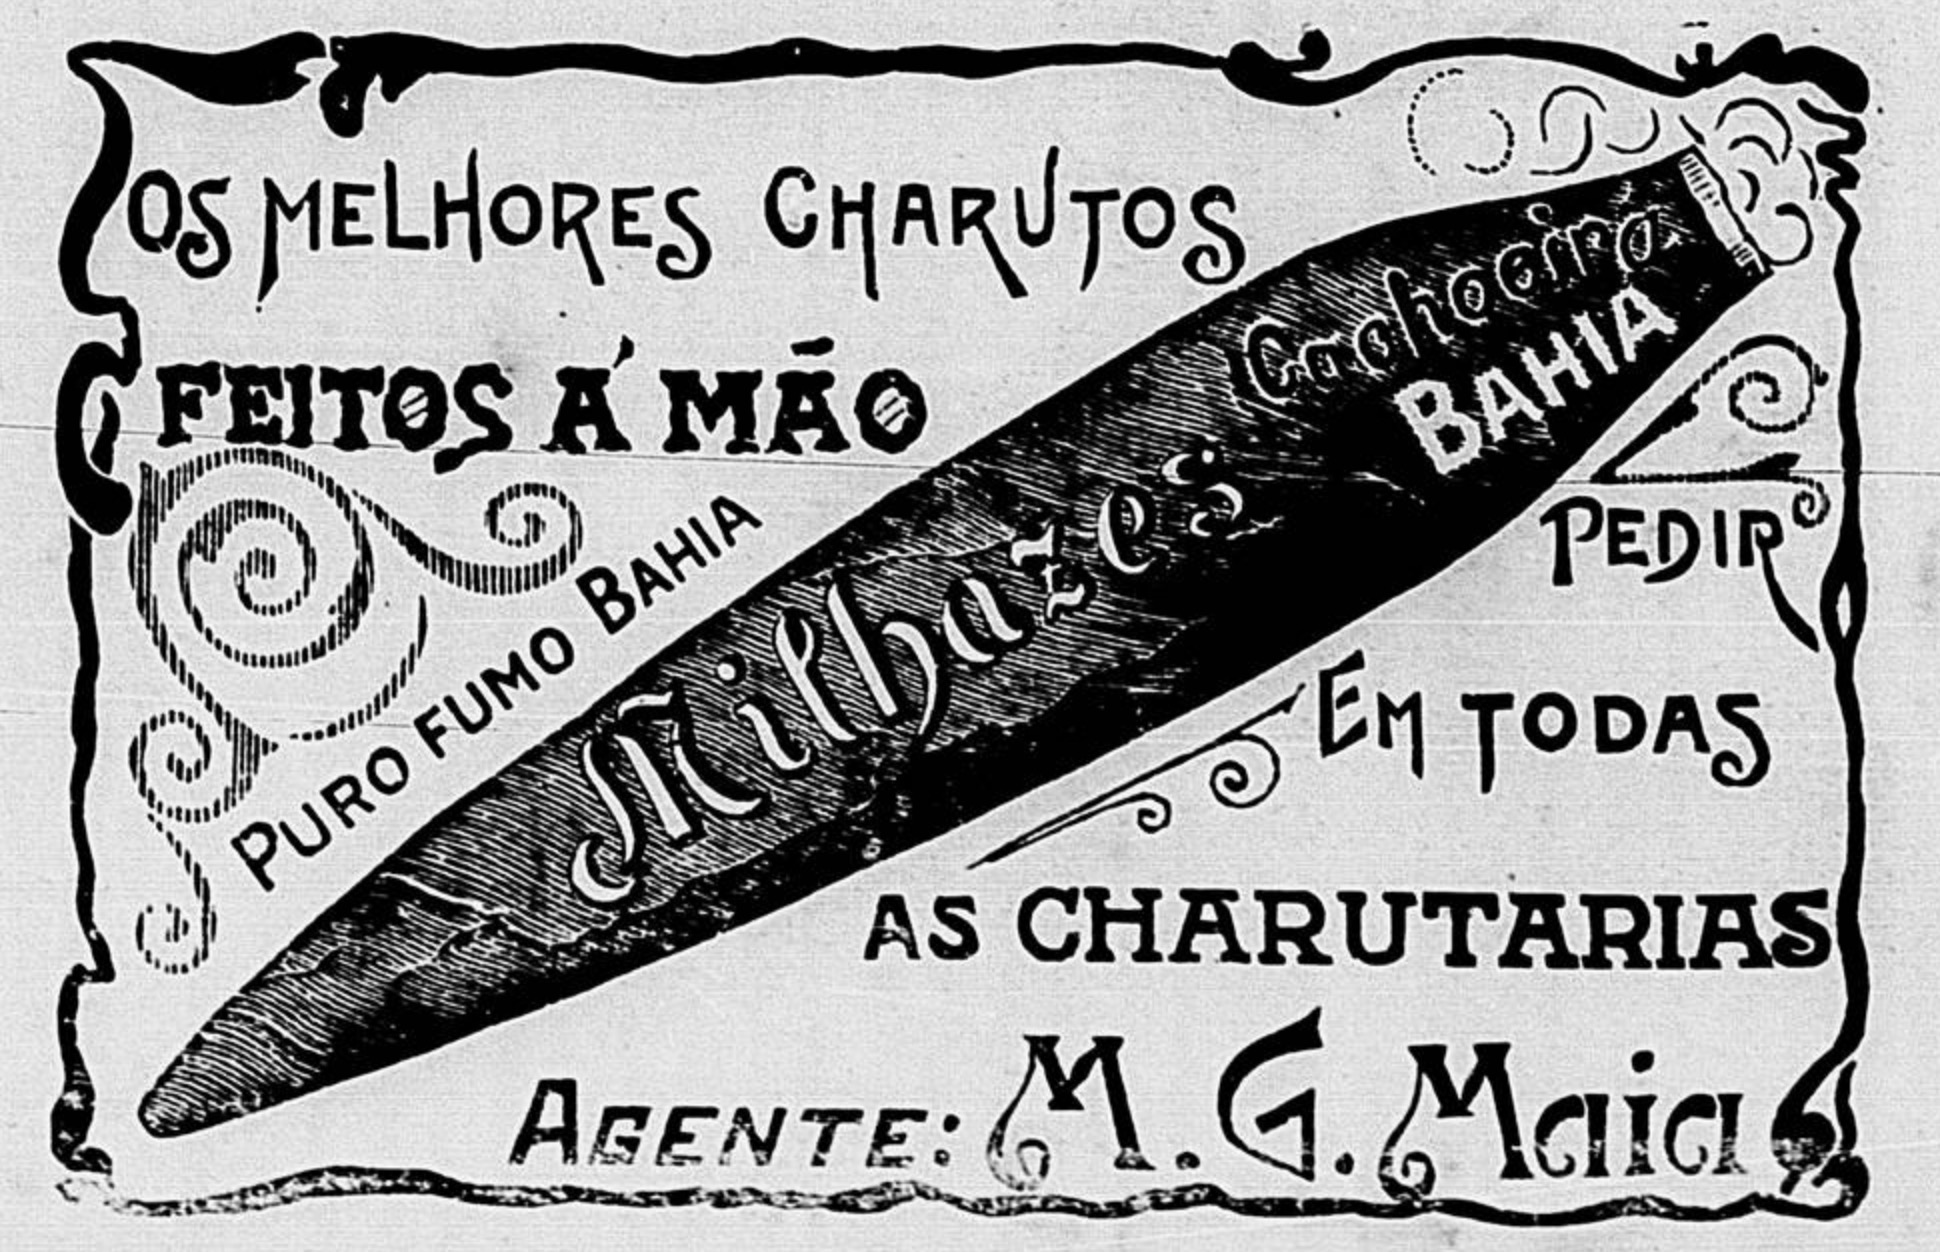 Anúncio veiculado em 1903 apresentando os charutos da marca Milhazes